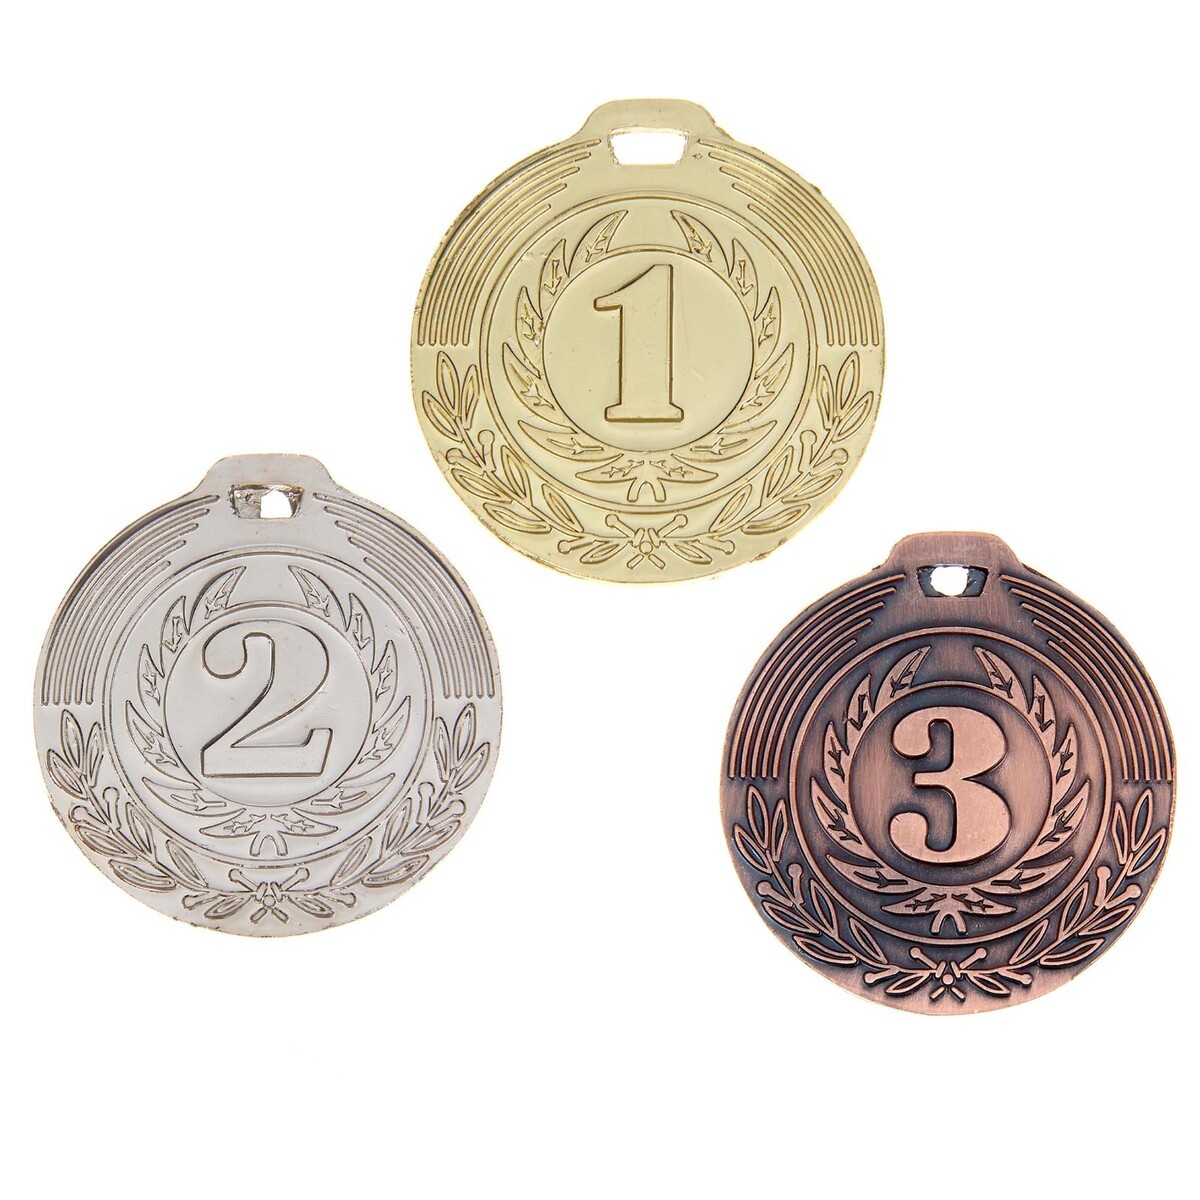 Медаль призовая 021 диам 4 см. 3 место. цвет бронз. без ленты медаль призовая 054 диам 4 5 см 3 место бронз без ленты